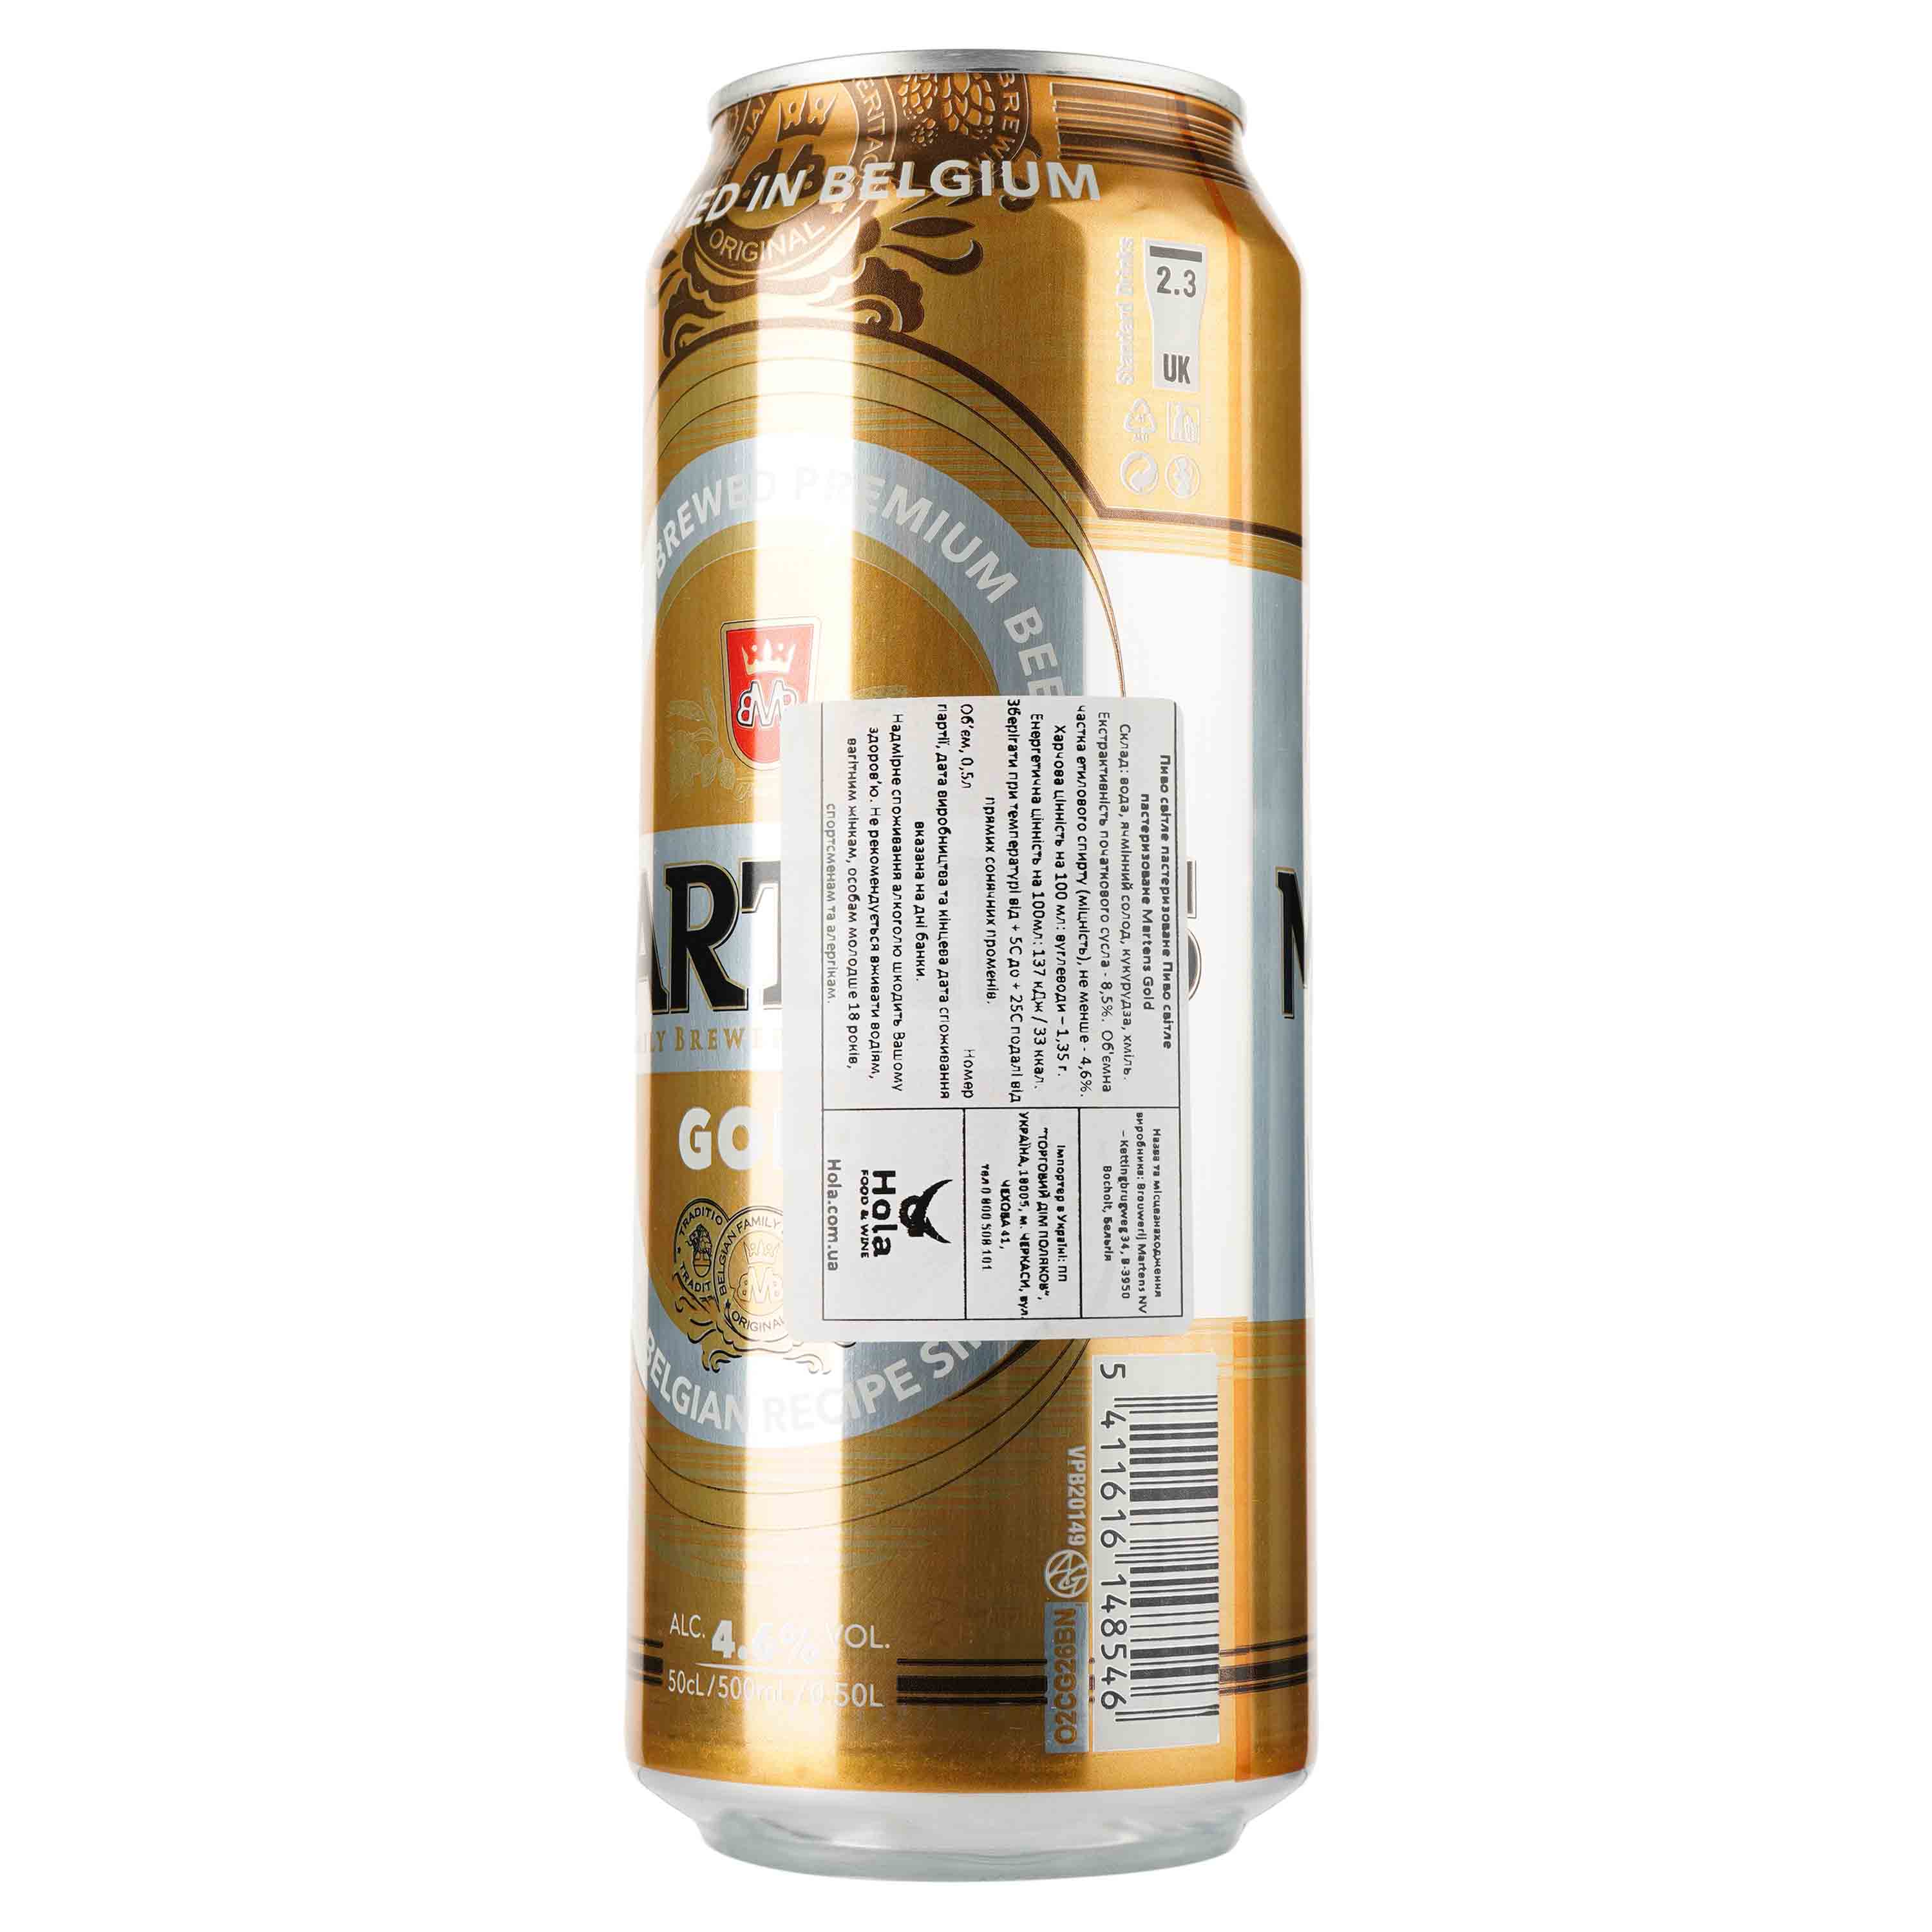 Пиво Martens Gold, светлое, фильтрованное, 4,6%, ж/б, 0,5 л - фото 2